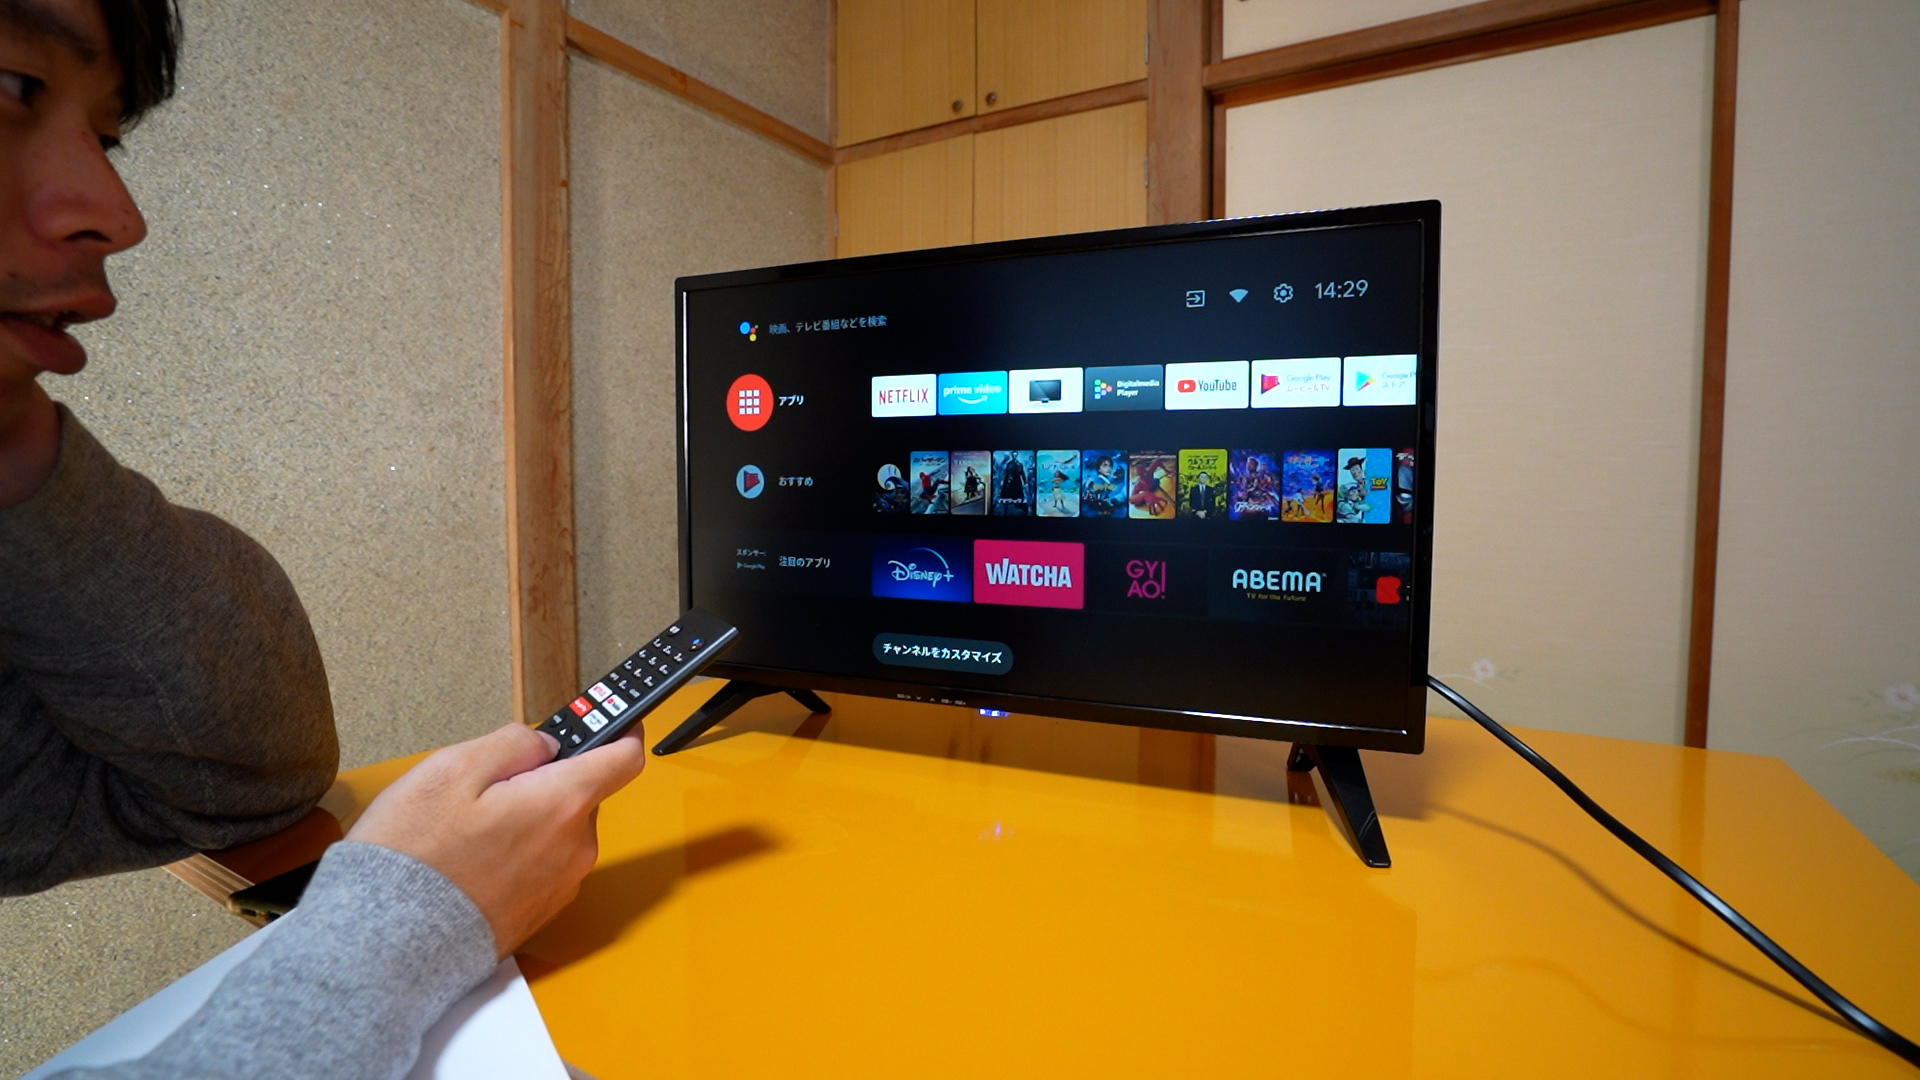 ドン・キホーテ Android TV 24型 チューナーレス スマートテレビ 